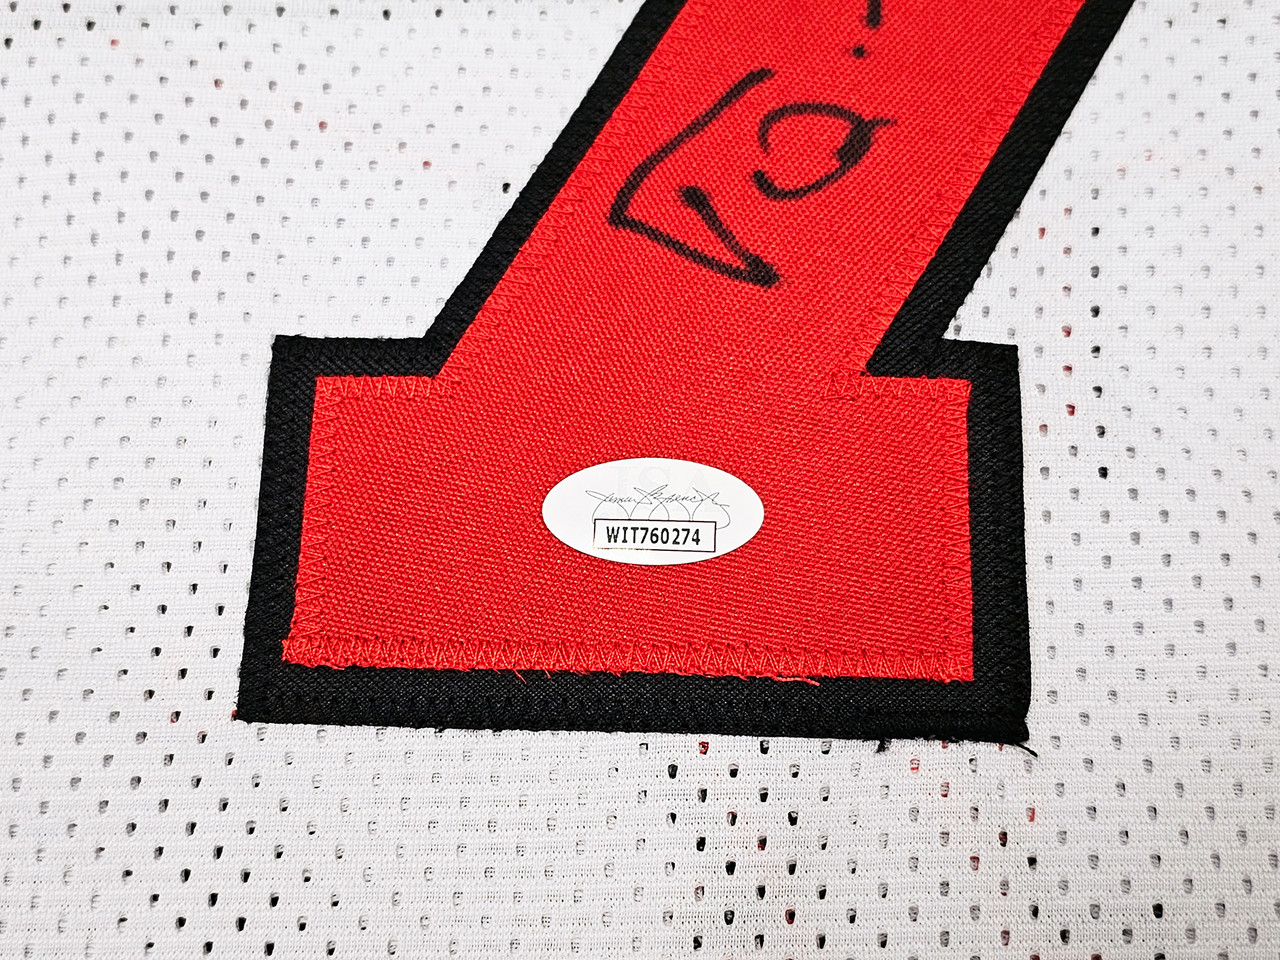 Toni Kukoc Chicago Bulls Signed Autographed White #7 Custom Jersey –